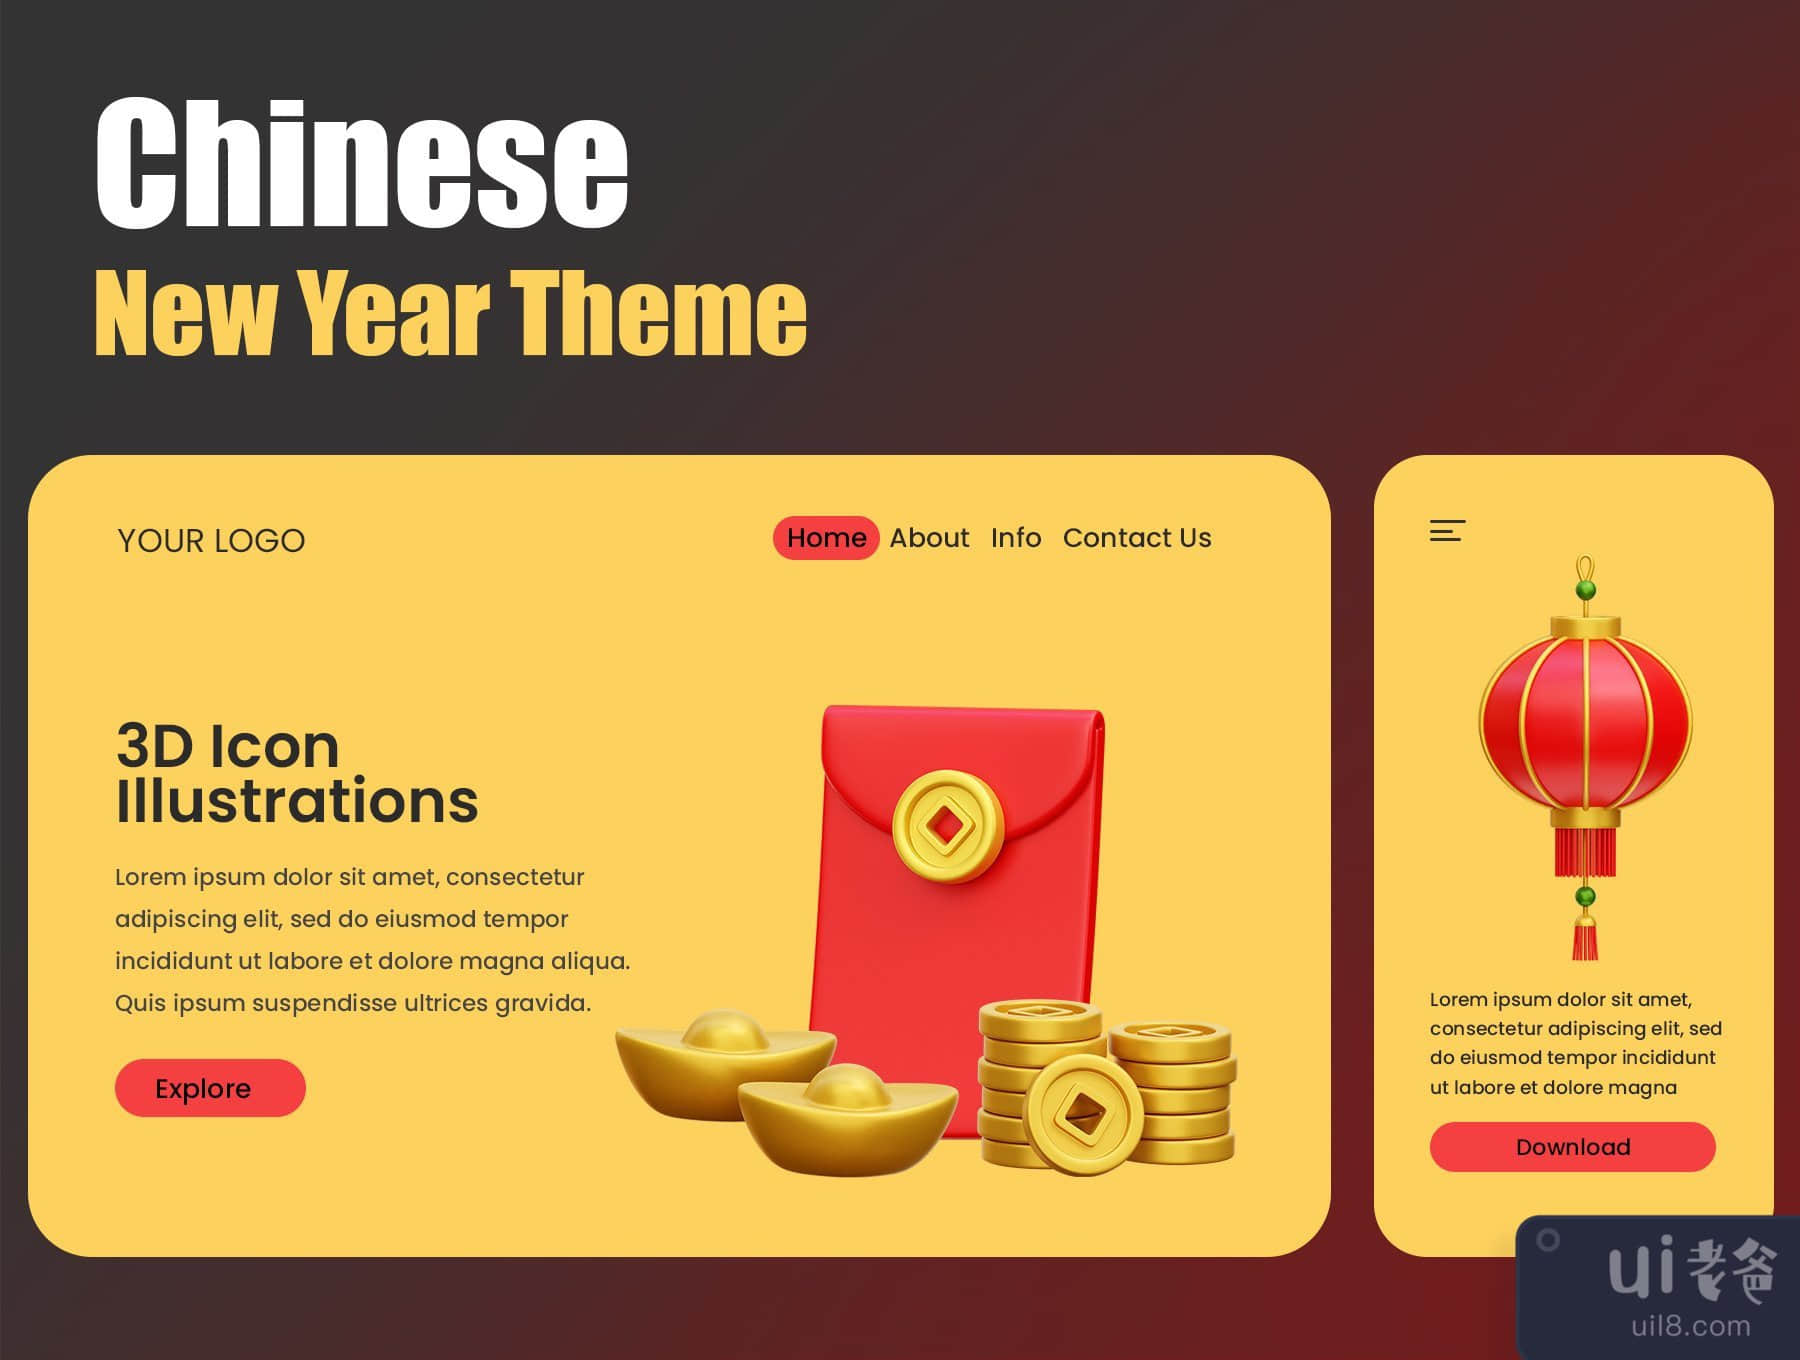 中国新年的3D图标插图 (Chinese New Year 3D Icon Illustrations)插图3